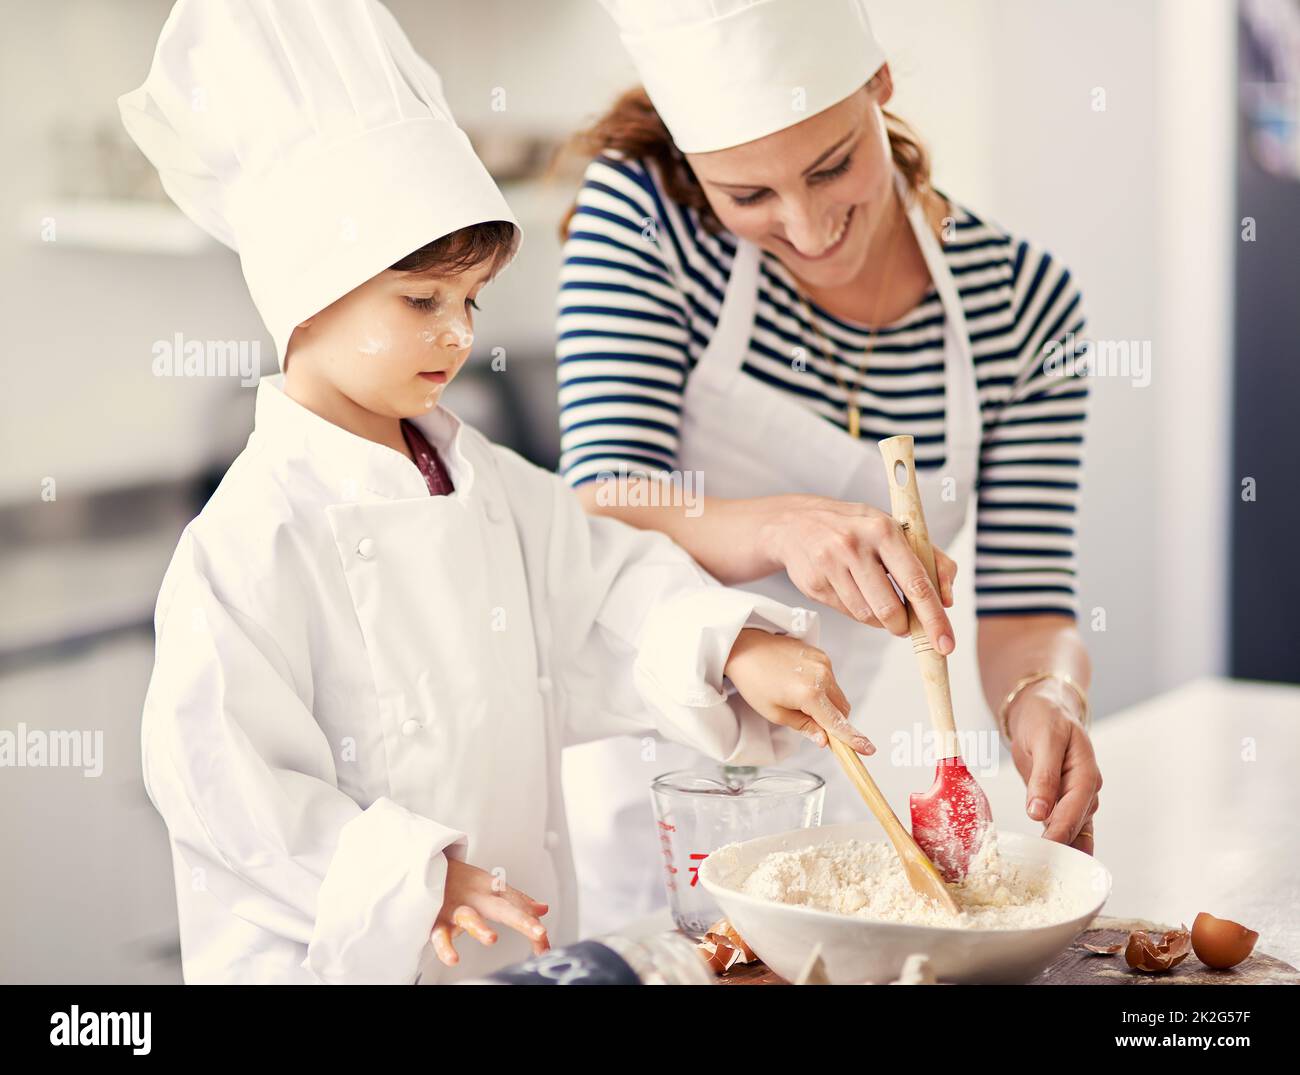 Verbreiten Sie die Liebe. Aufnahme einer Mutter und ihres Sohnes beim Backen in der Küche. Stockfoto